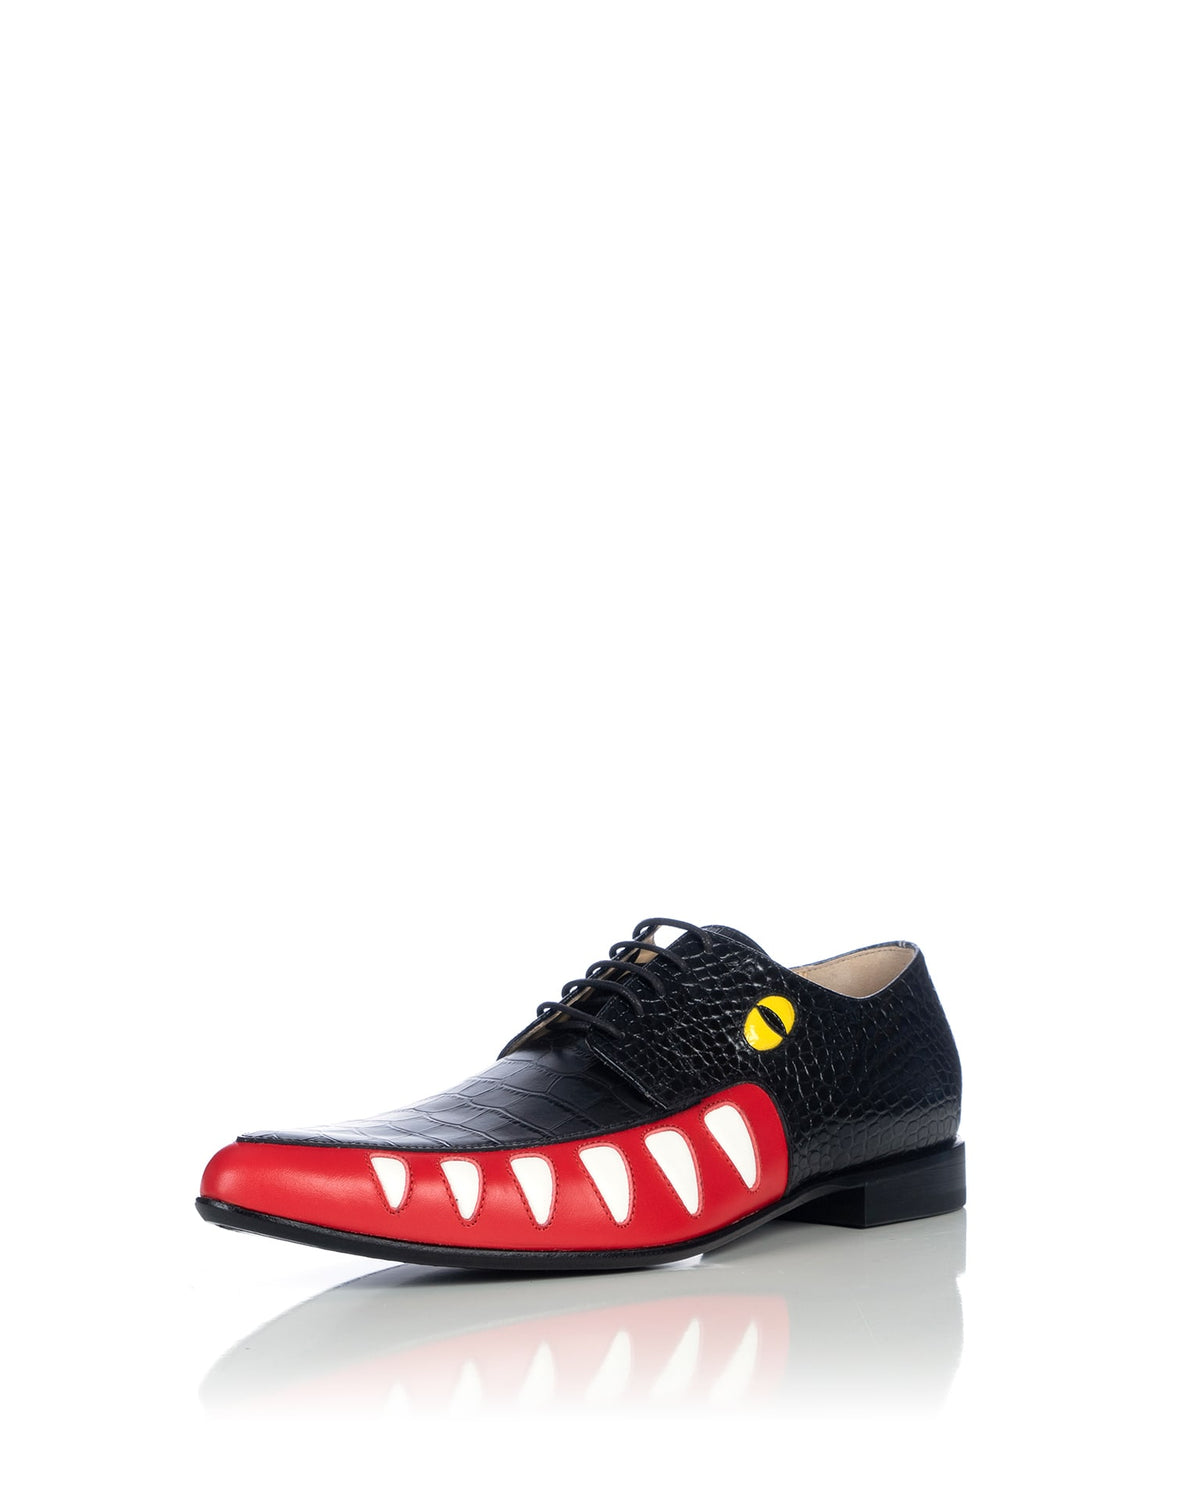 Walter Van Beirendonck | Crocodile Shoes Black Croco - Concrete